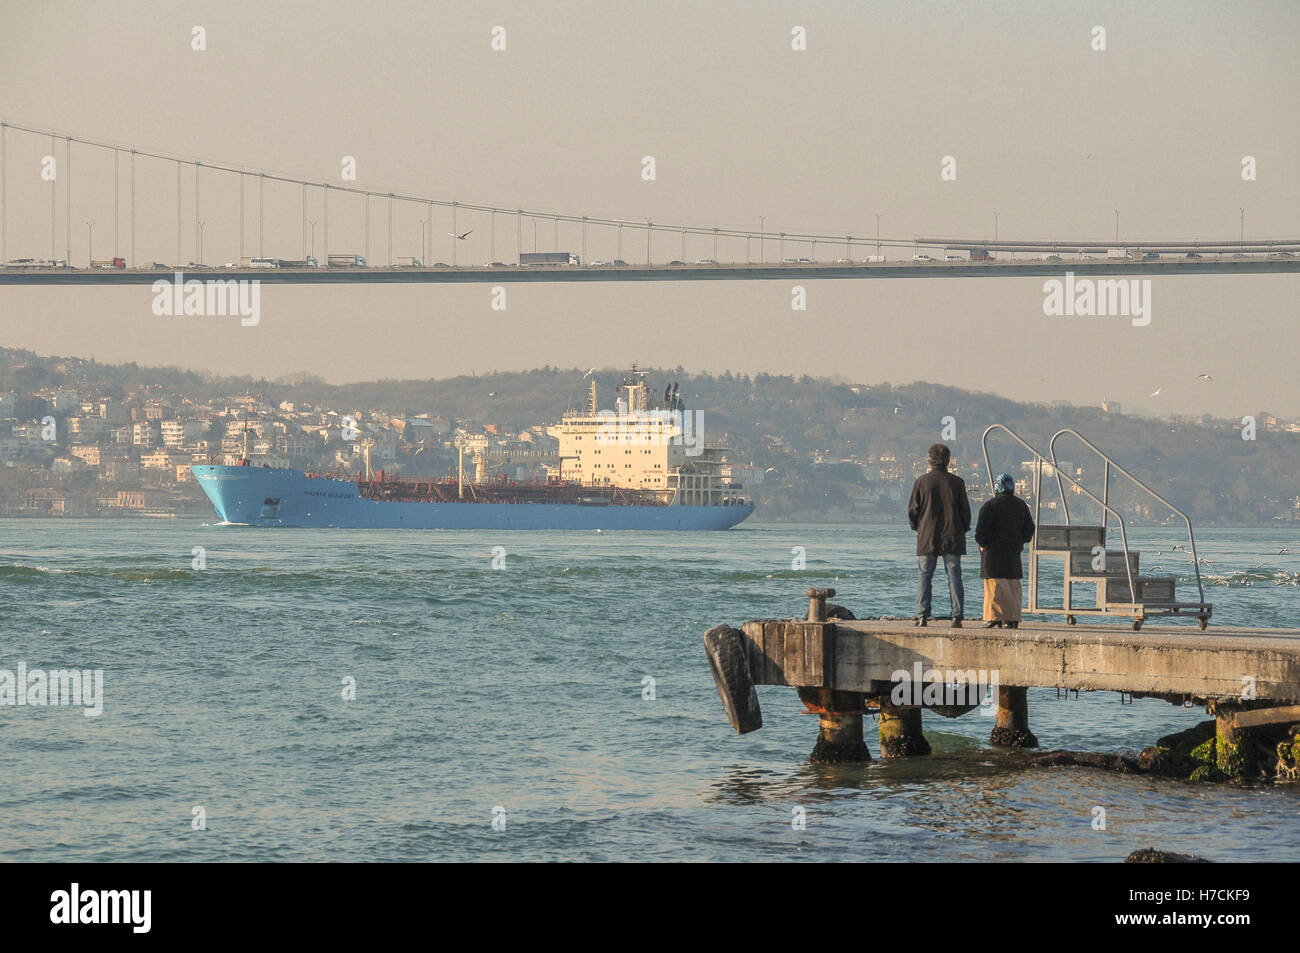 Die Menschen sehen eine Ladung Schiff Segel unter der Bosporus-Brücke aus einem Pier auf der asiatischen Seite. Stockfoto